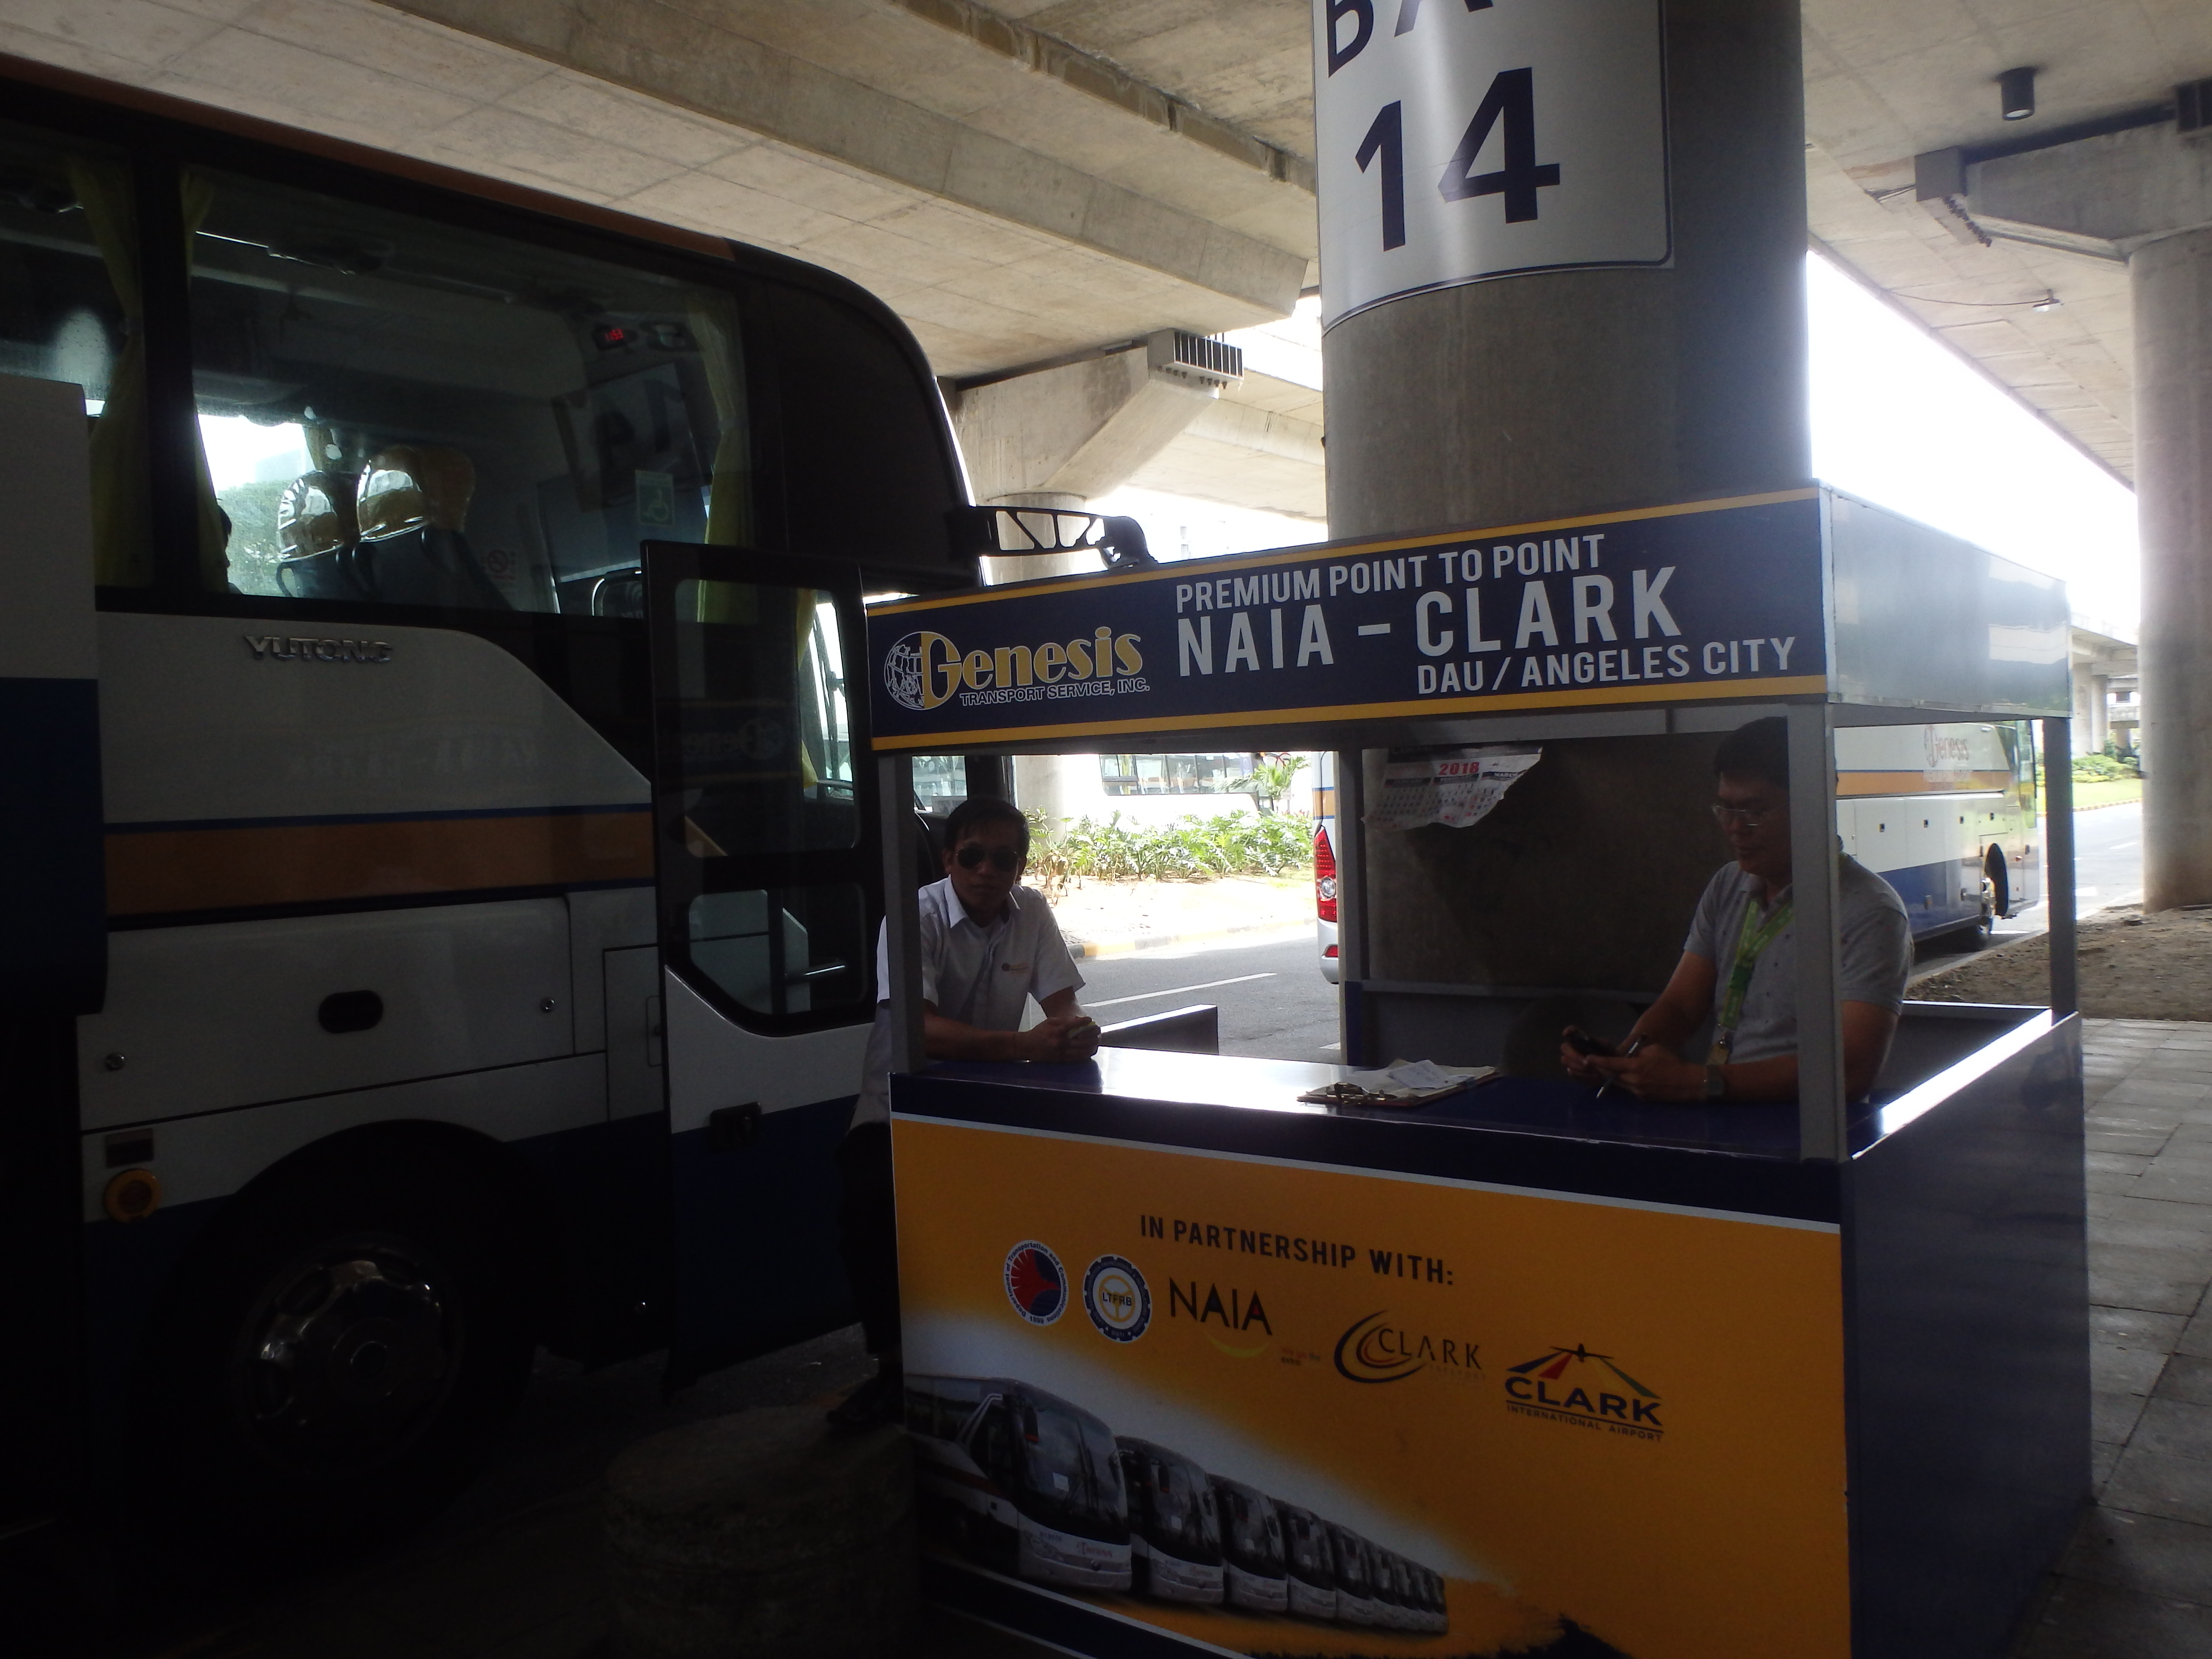 タクシーを使わないマニラ空港-クラーク・アンヘルス間直行バスの紹介